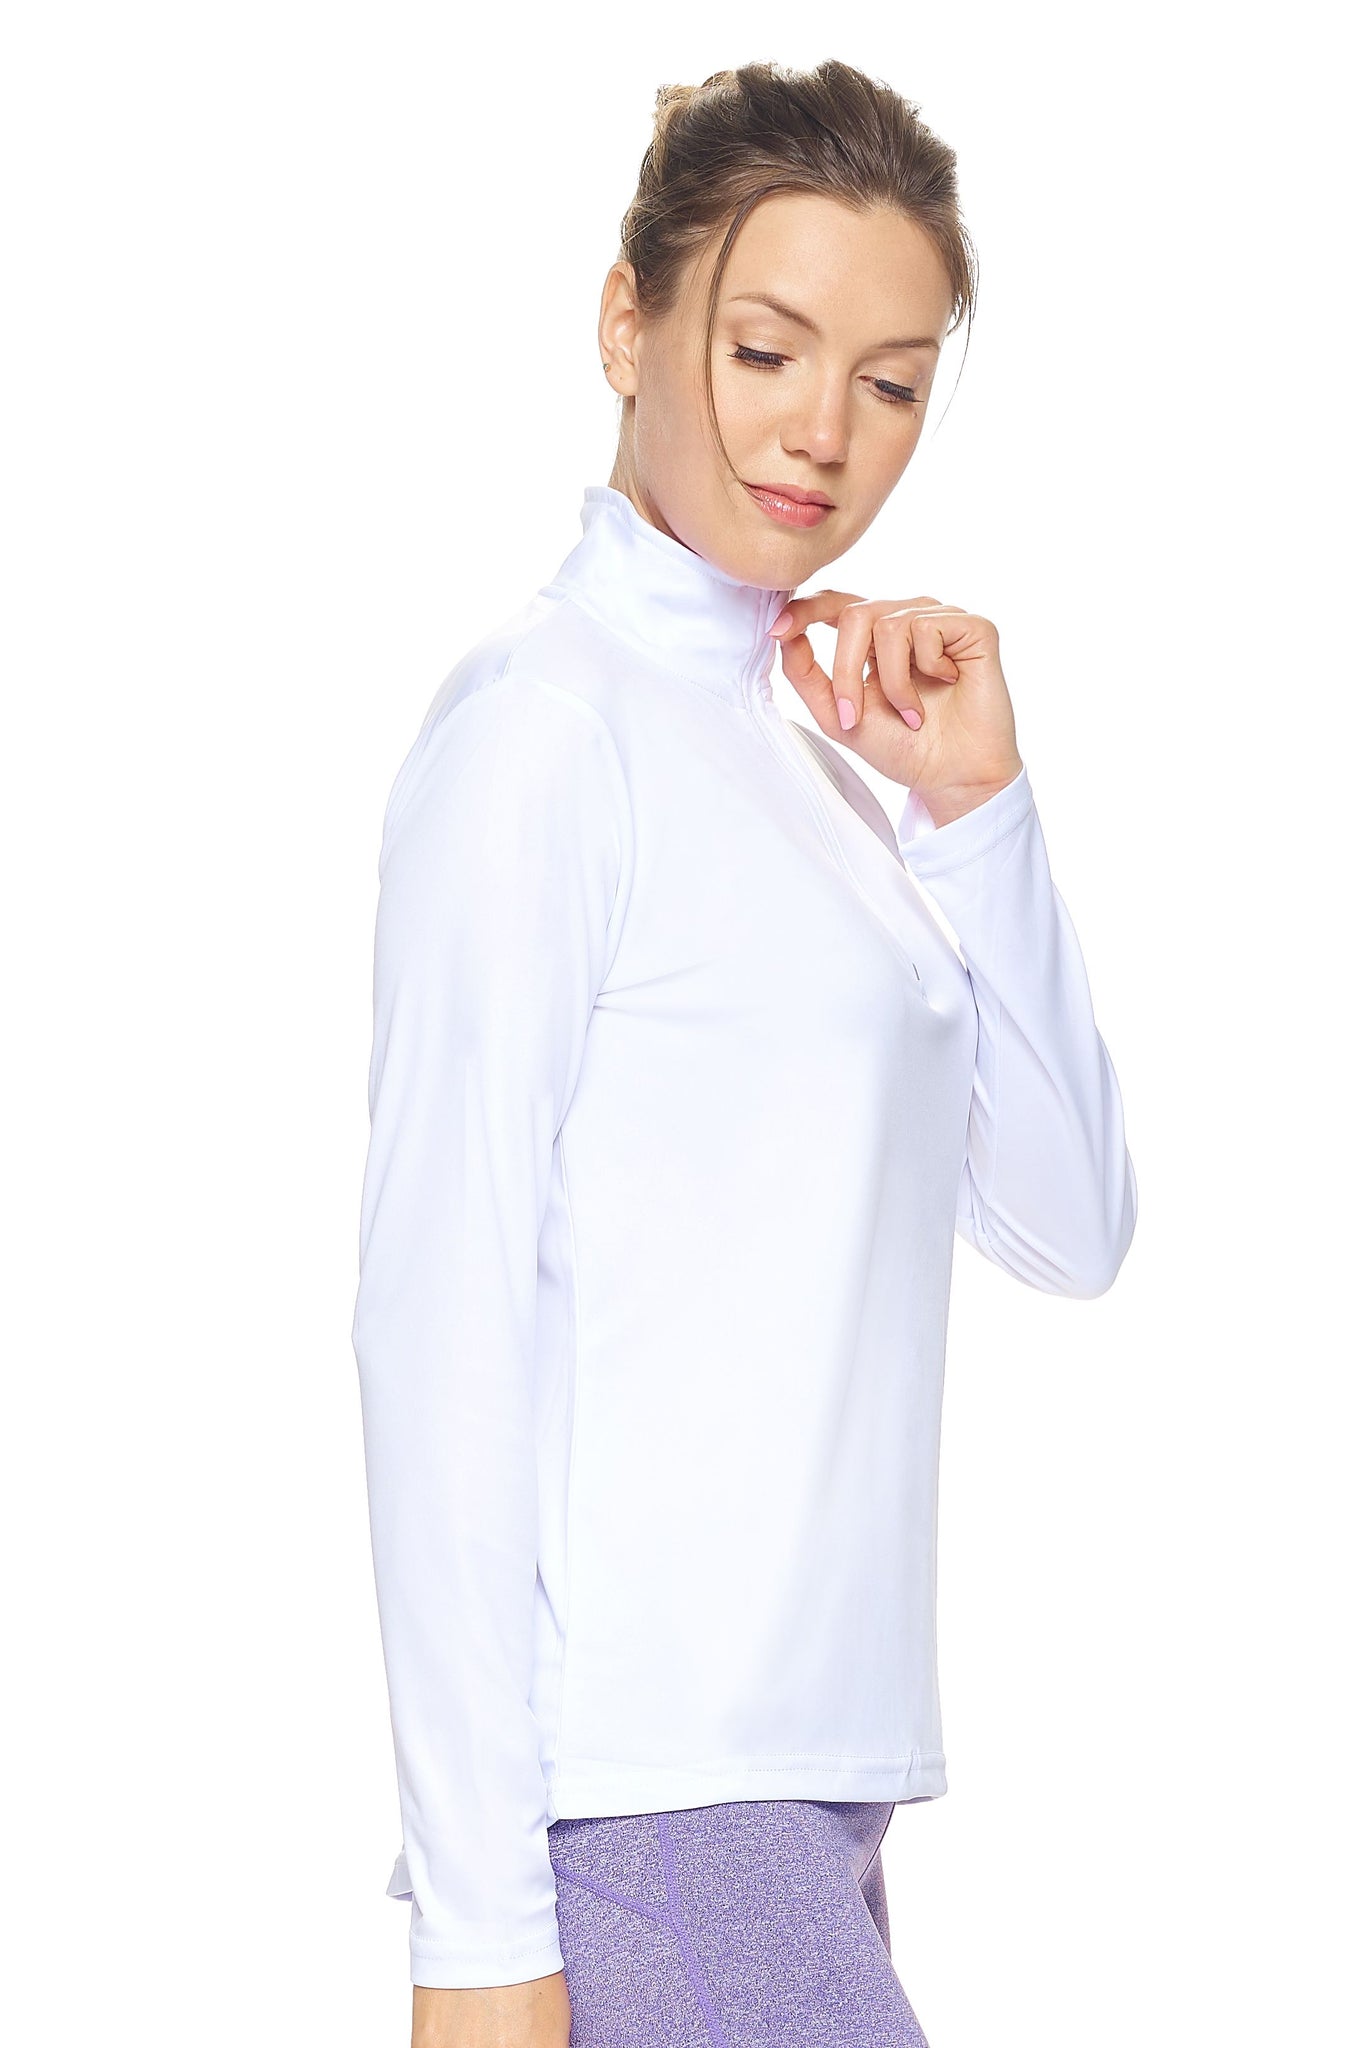 Expert Brand Women's White pk MaX™ ¼ Zip Training Image 2#white